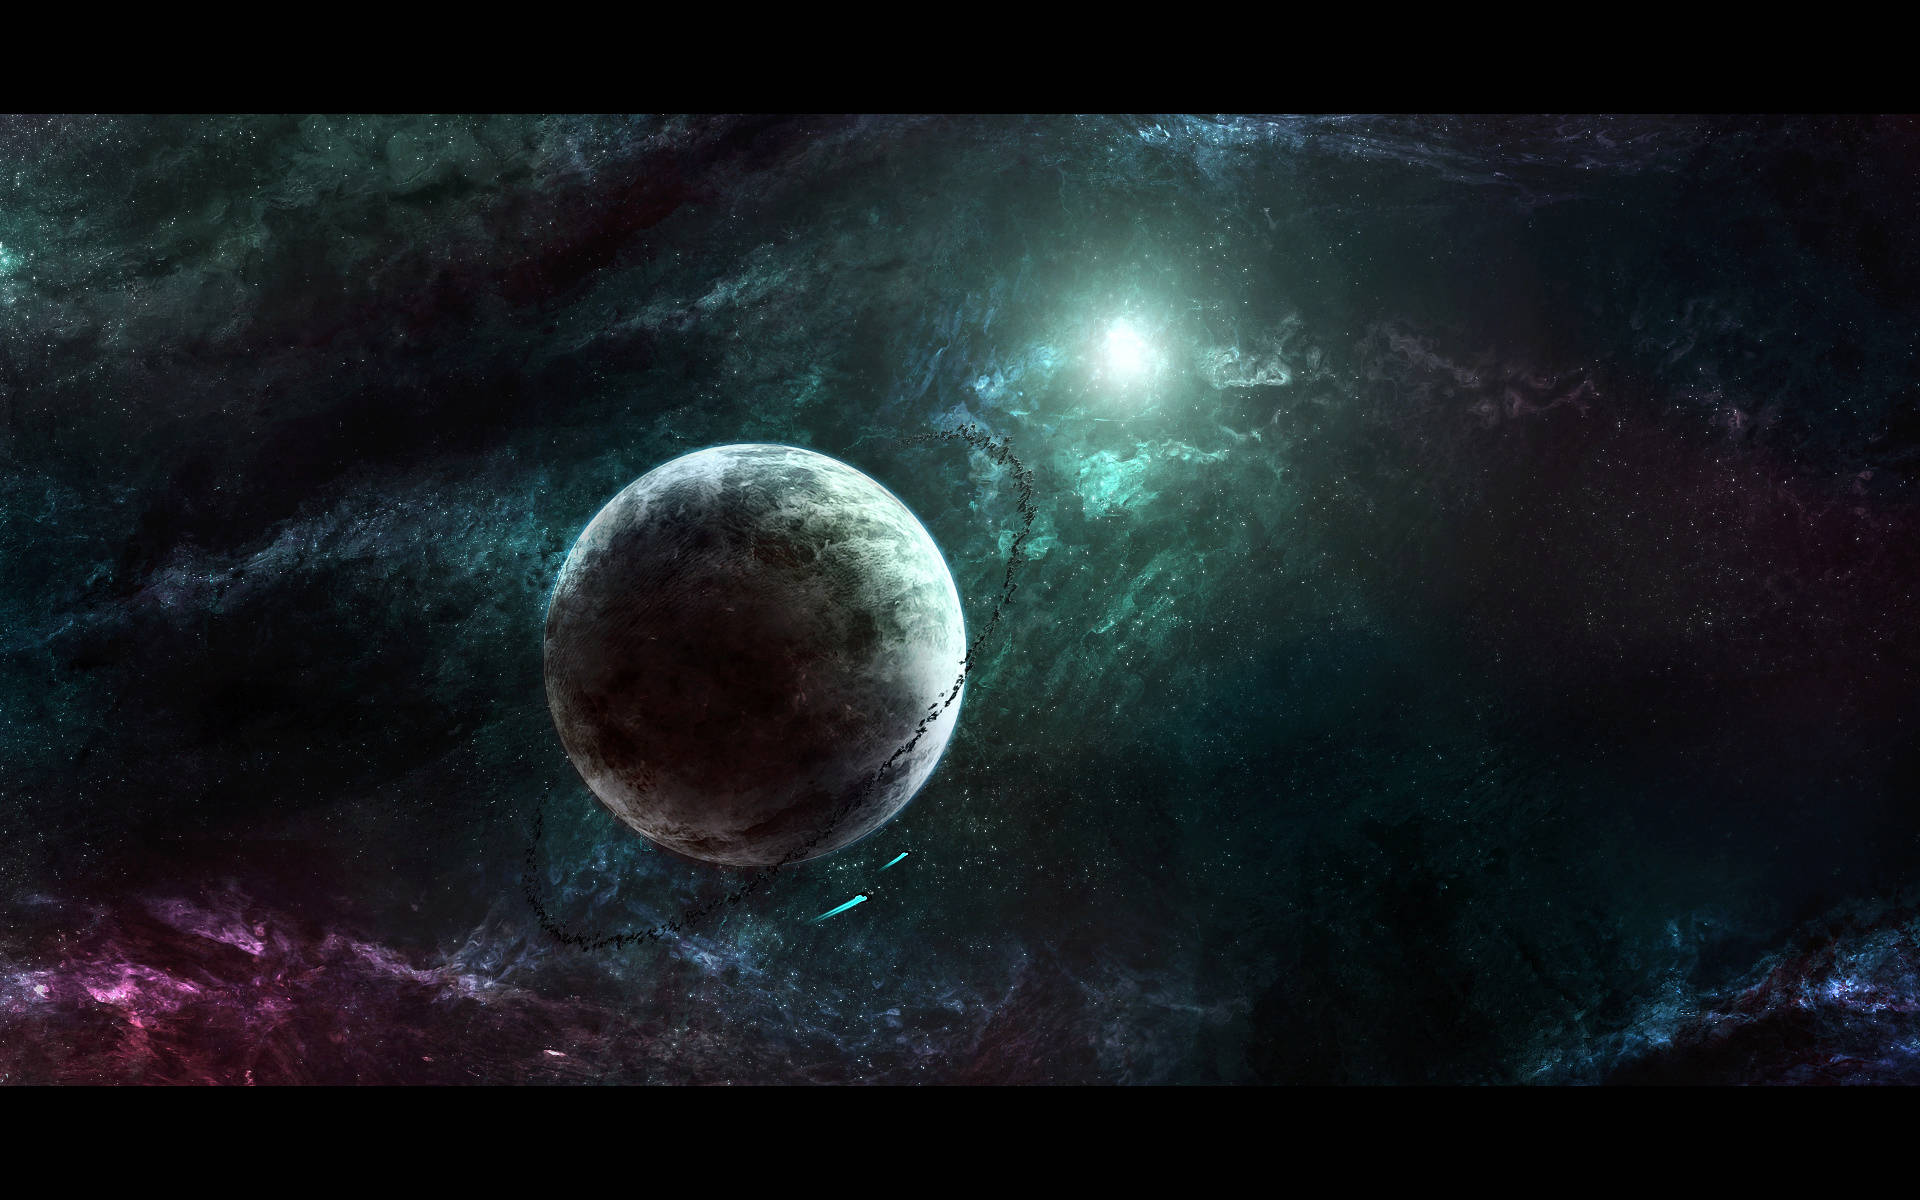 Звёздное небо и космос в картинках - Страница 8 Exodus10